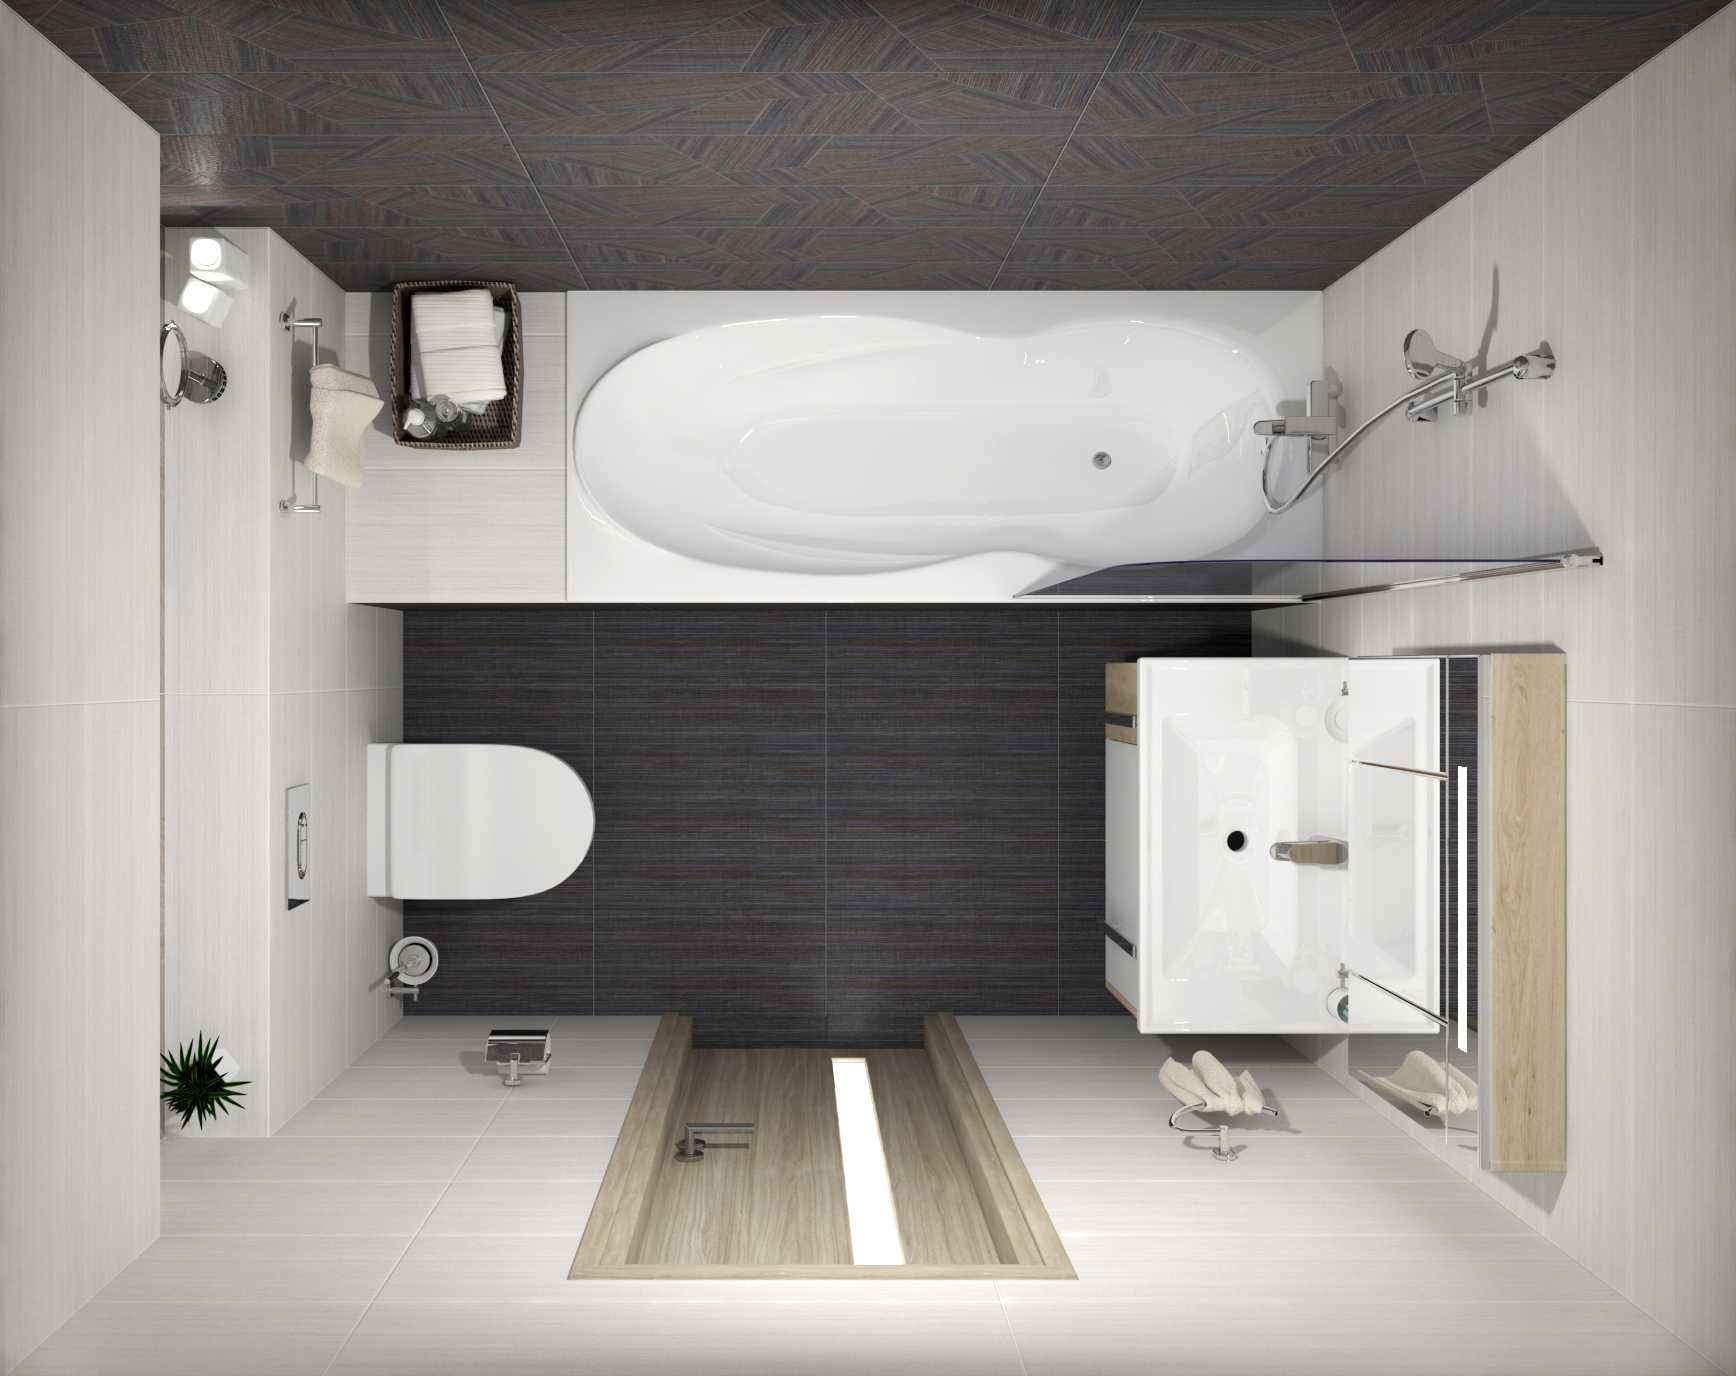 Рассказываем, как оформить дизайн ванной комнаты 7 кв метров на примере 11 проектов от дизайнеров